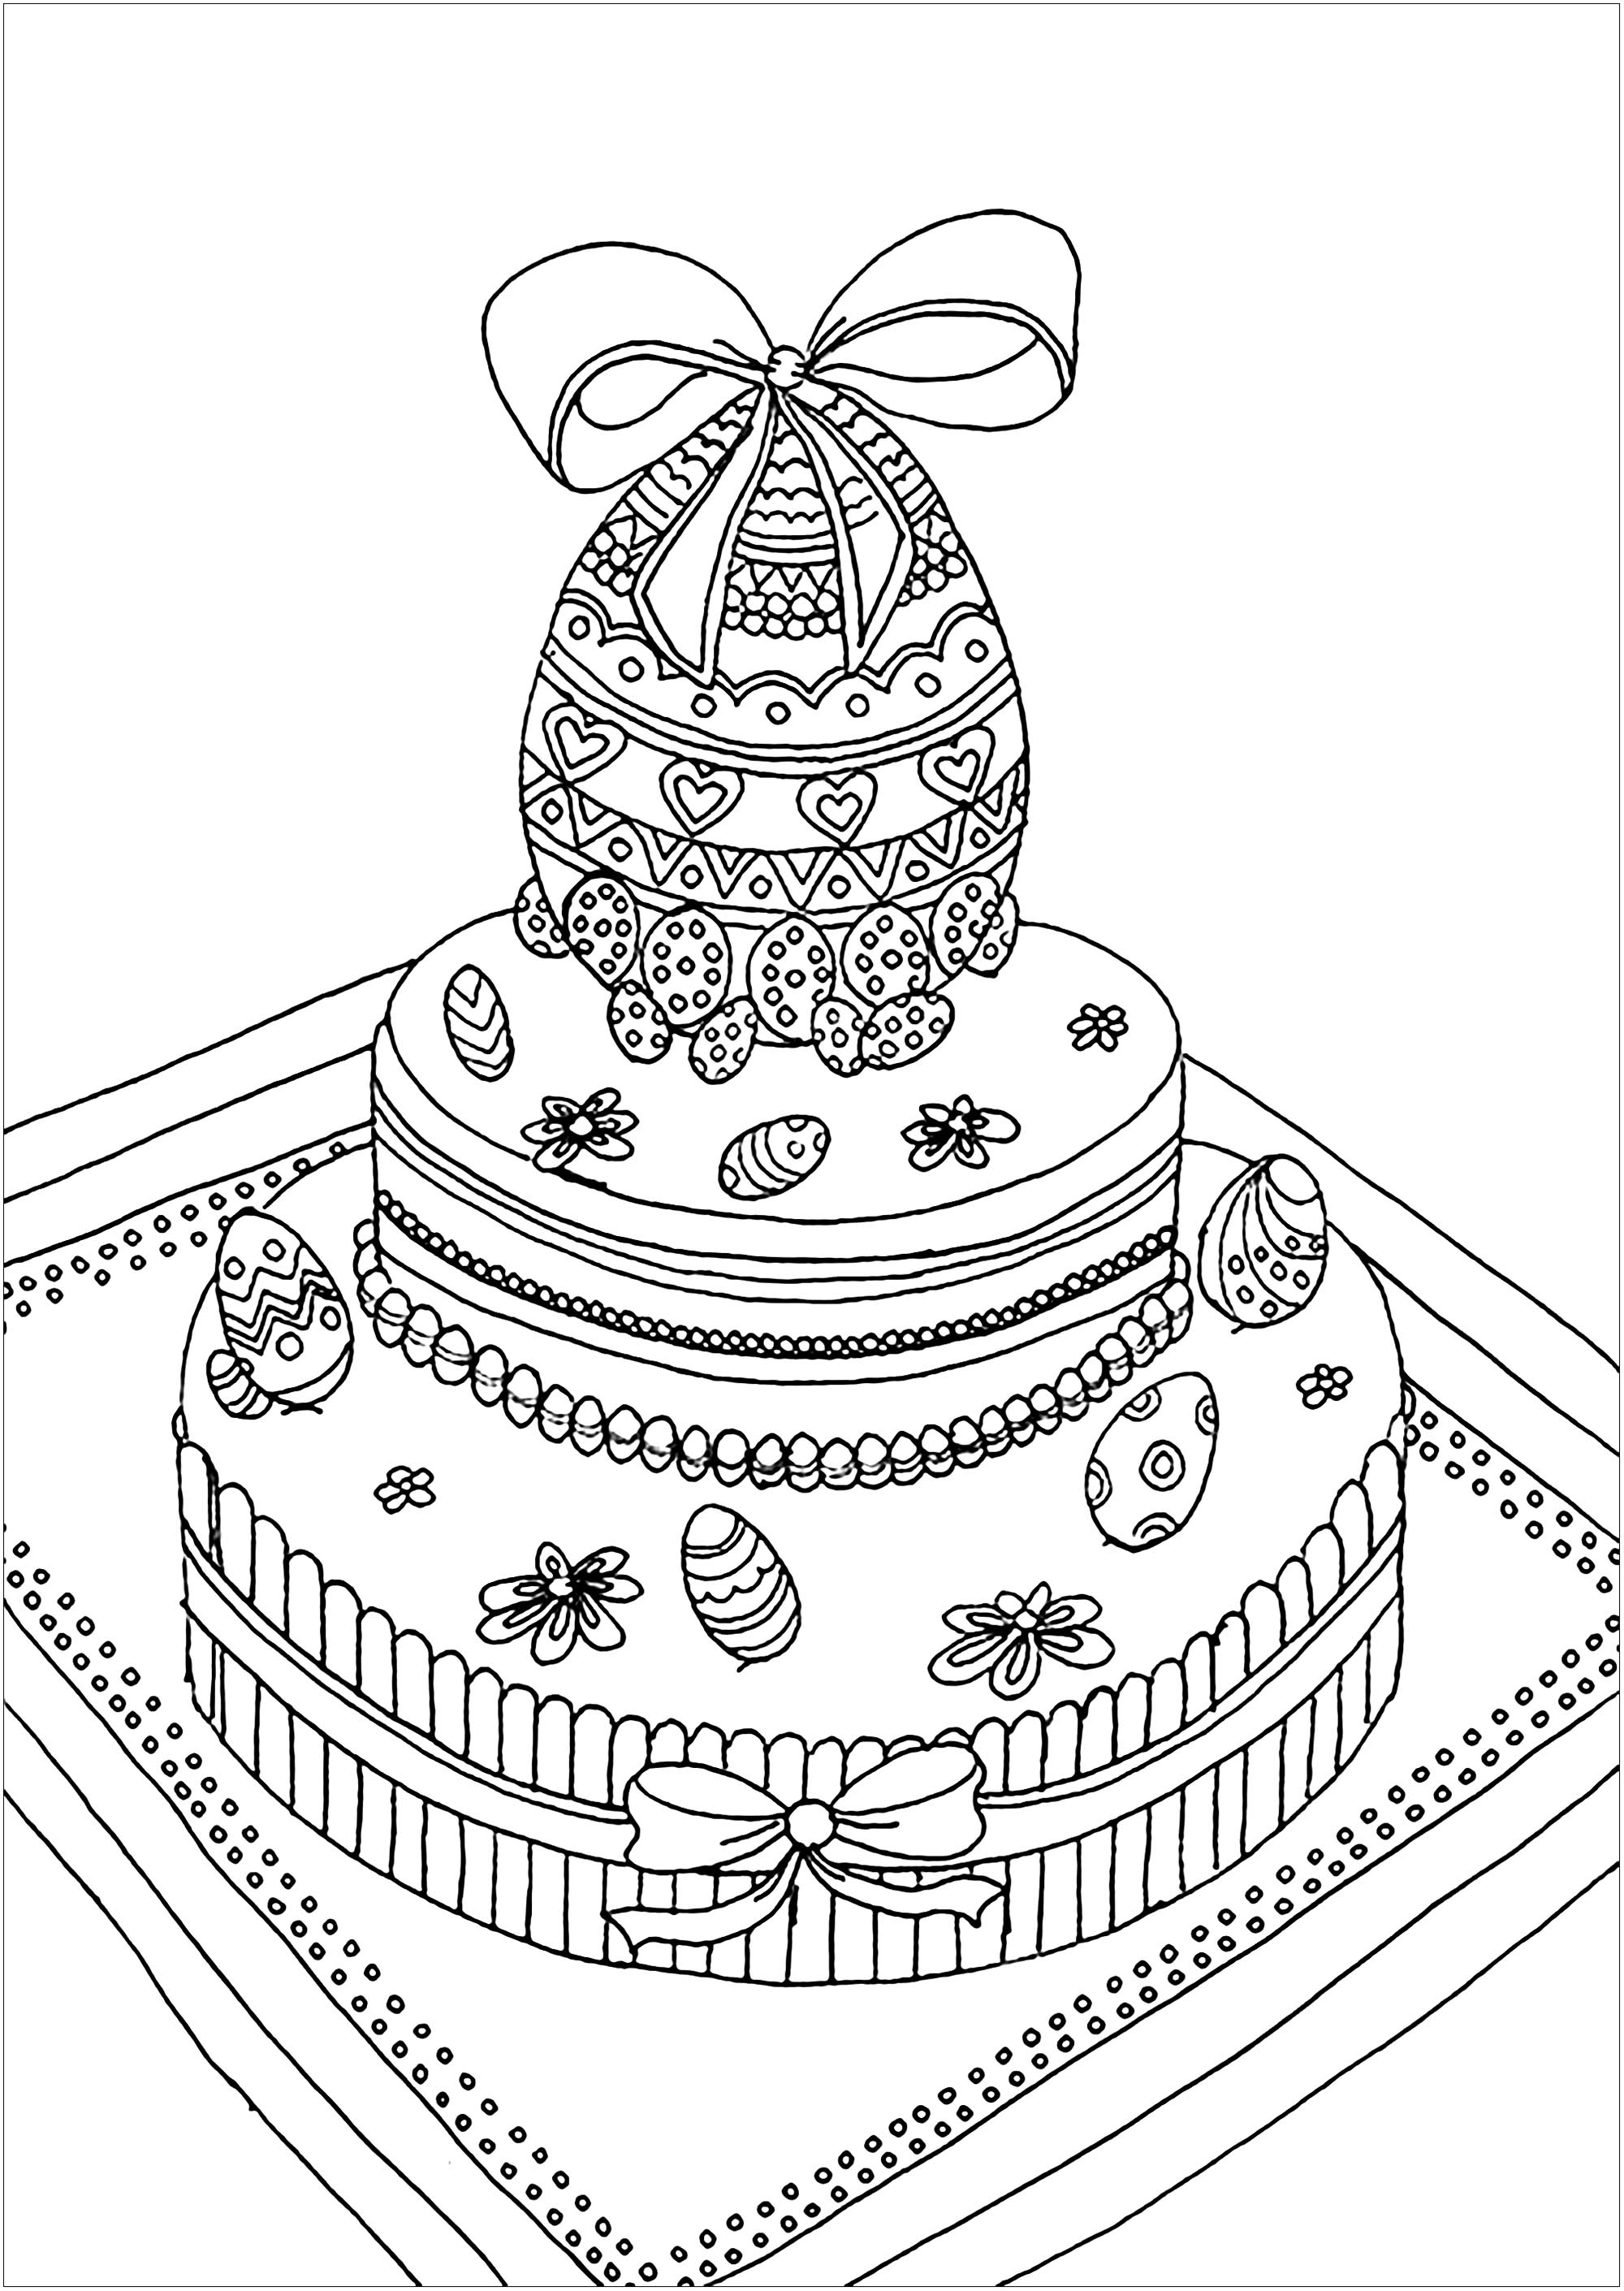 Increíble huevo de pascua en la parte superior de un pastel, con un aspecto delicioso, Artista : Kerozen